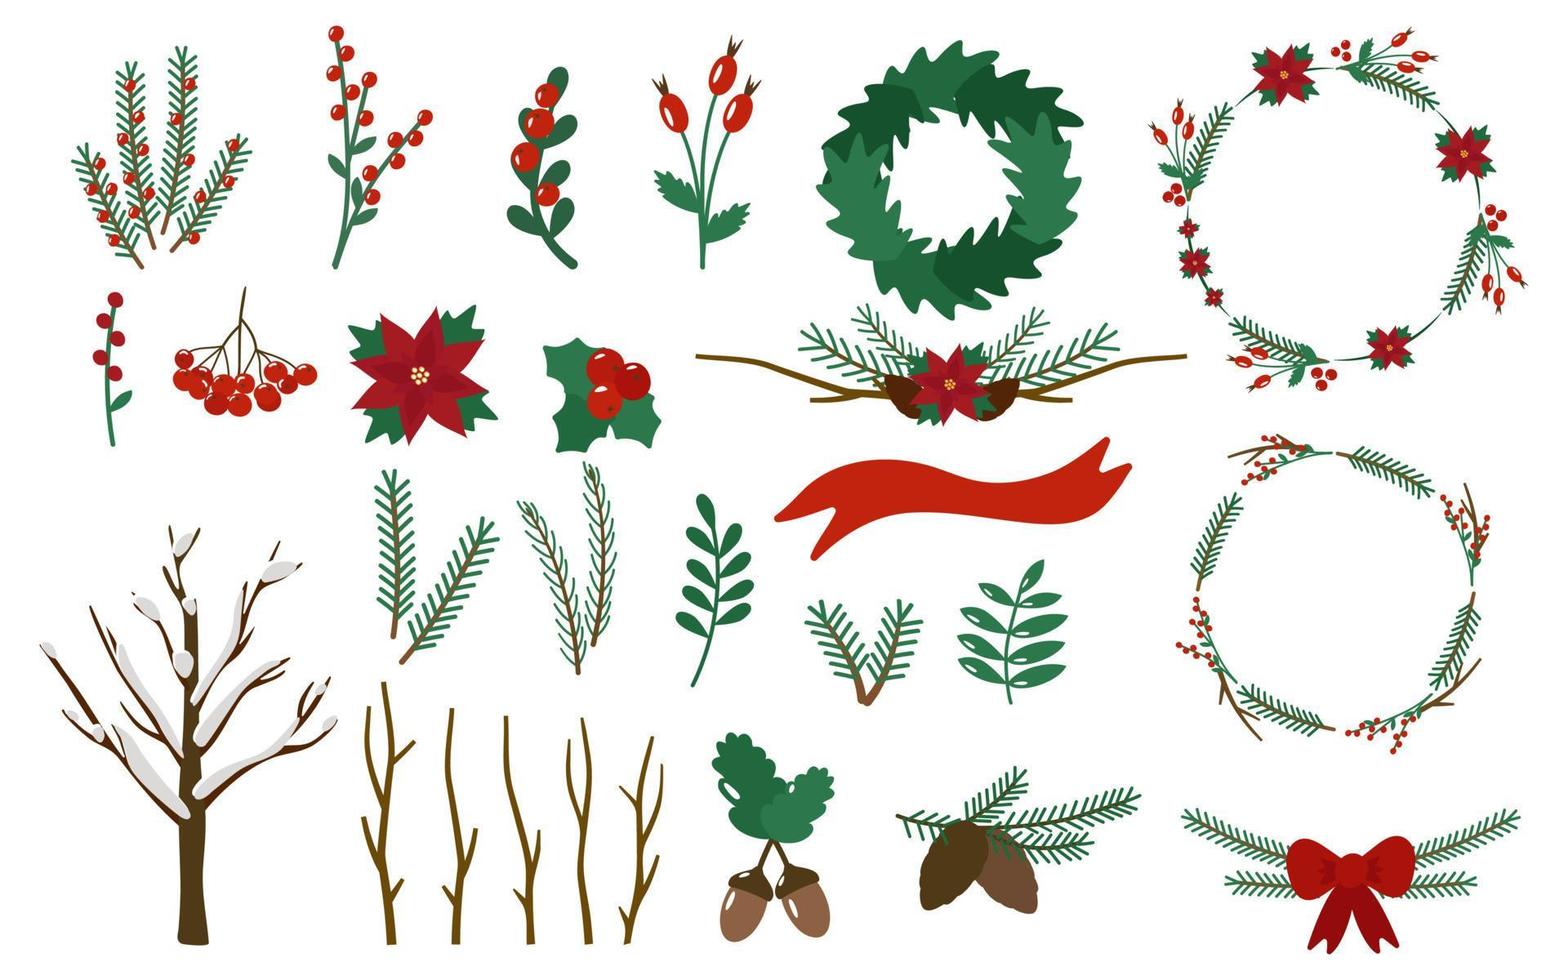 uppsättning av julkvistar, bär, kransar. järnek, julstjärna, rönn, nypon, ekollon, kotte. vektor illustration.